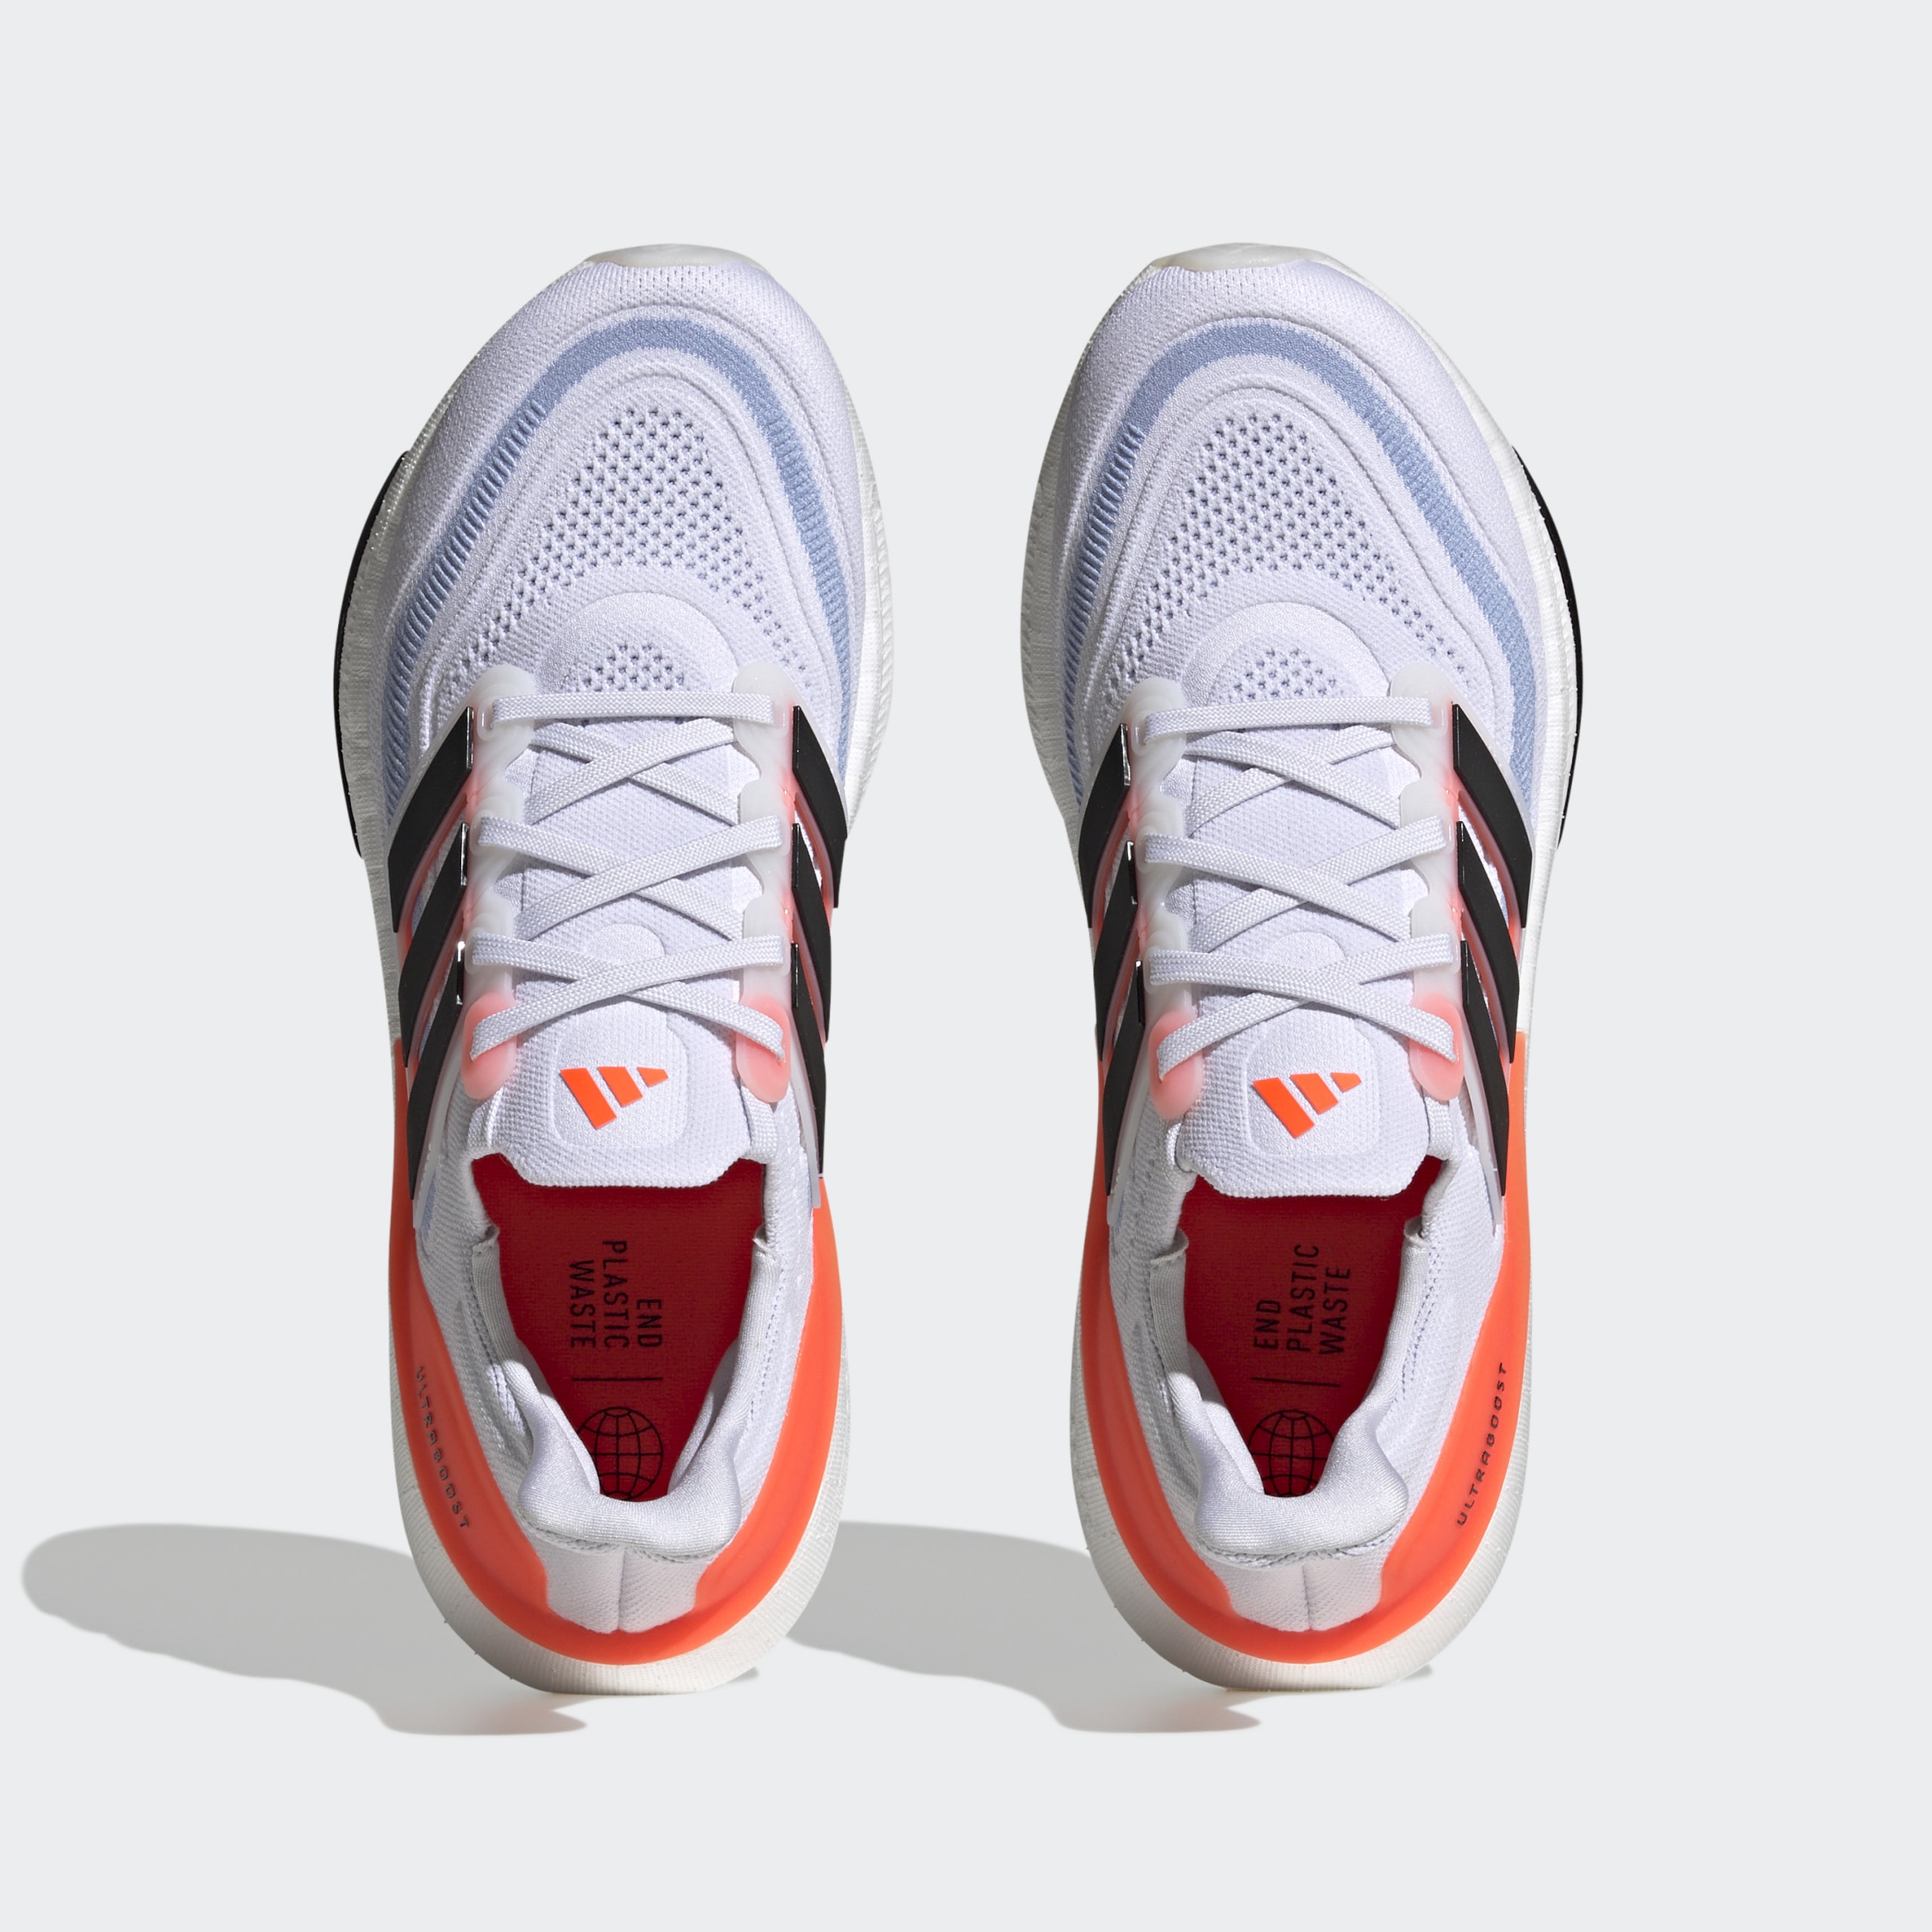 史上最輕！adidas 全新跑鞋 UltraBOOST Light 正式登場